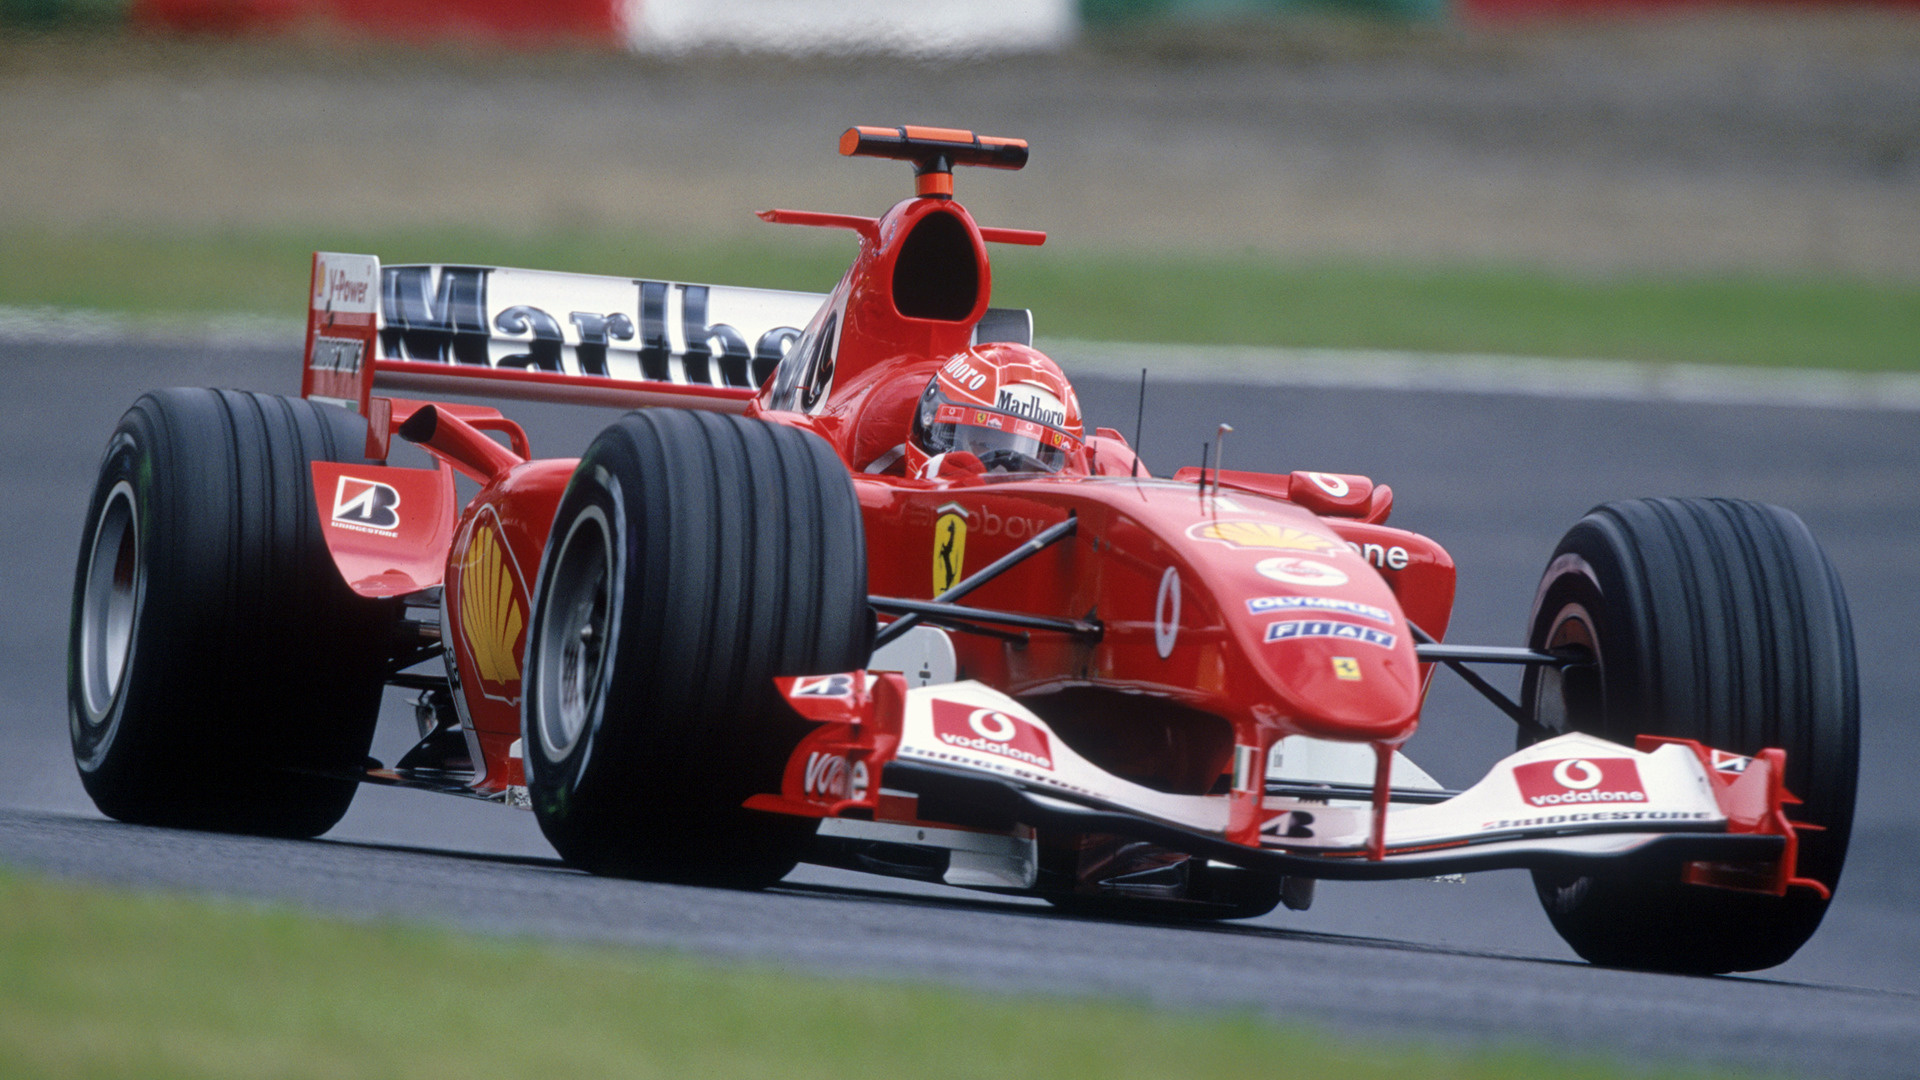 2004 Ferrari F2004 - Wallpapers and HD Images | Car Pixel